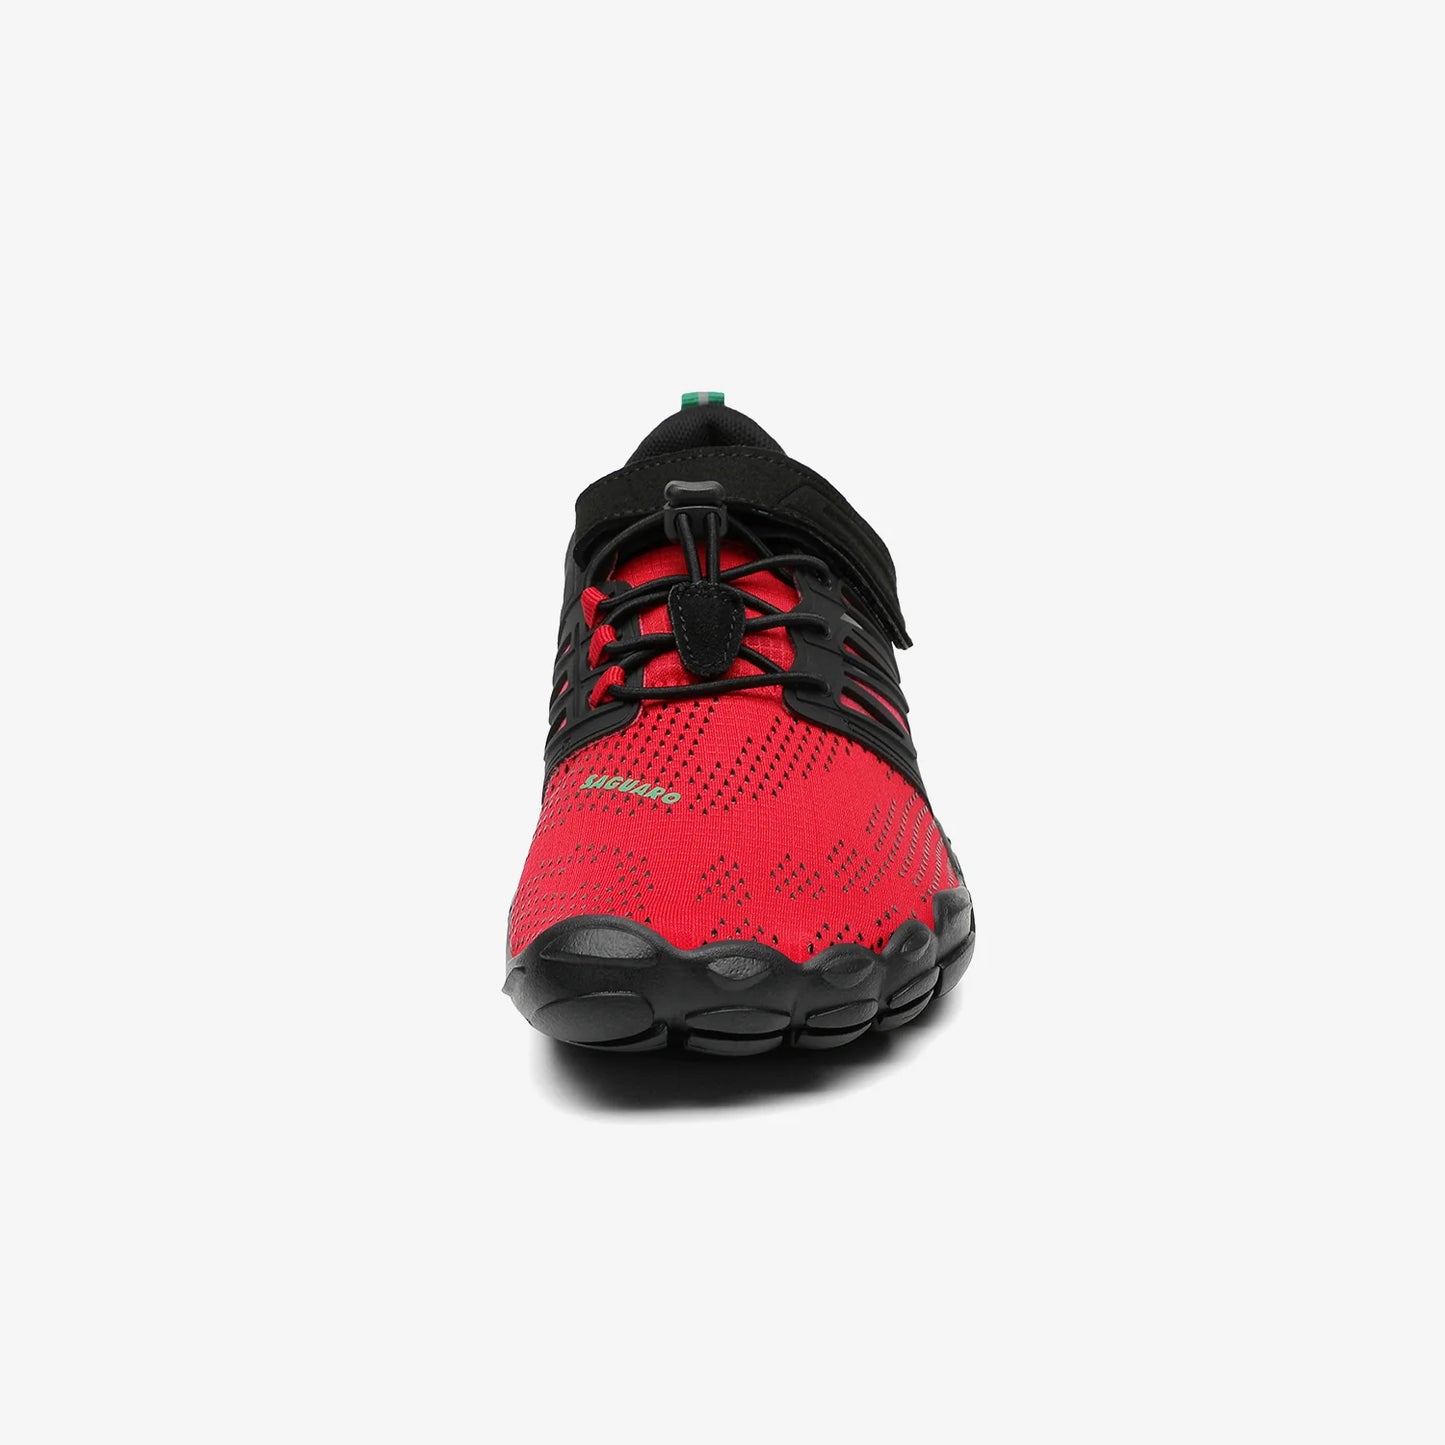 Chaser Vigor I - Rojo - Barefootshoes